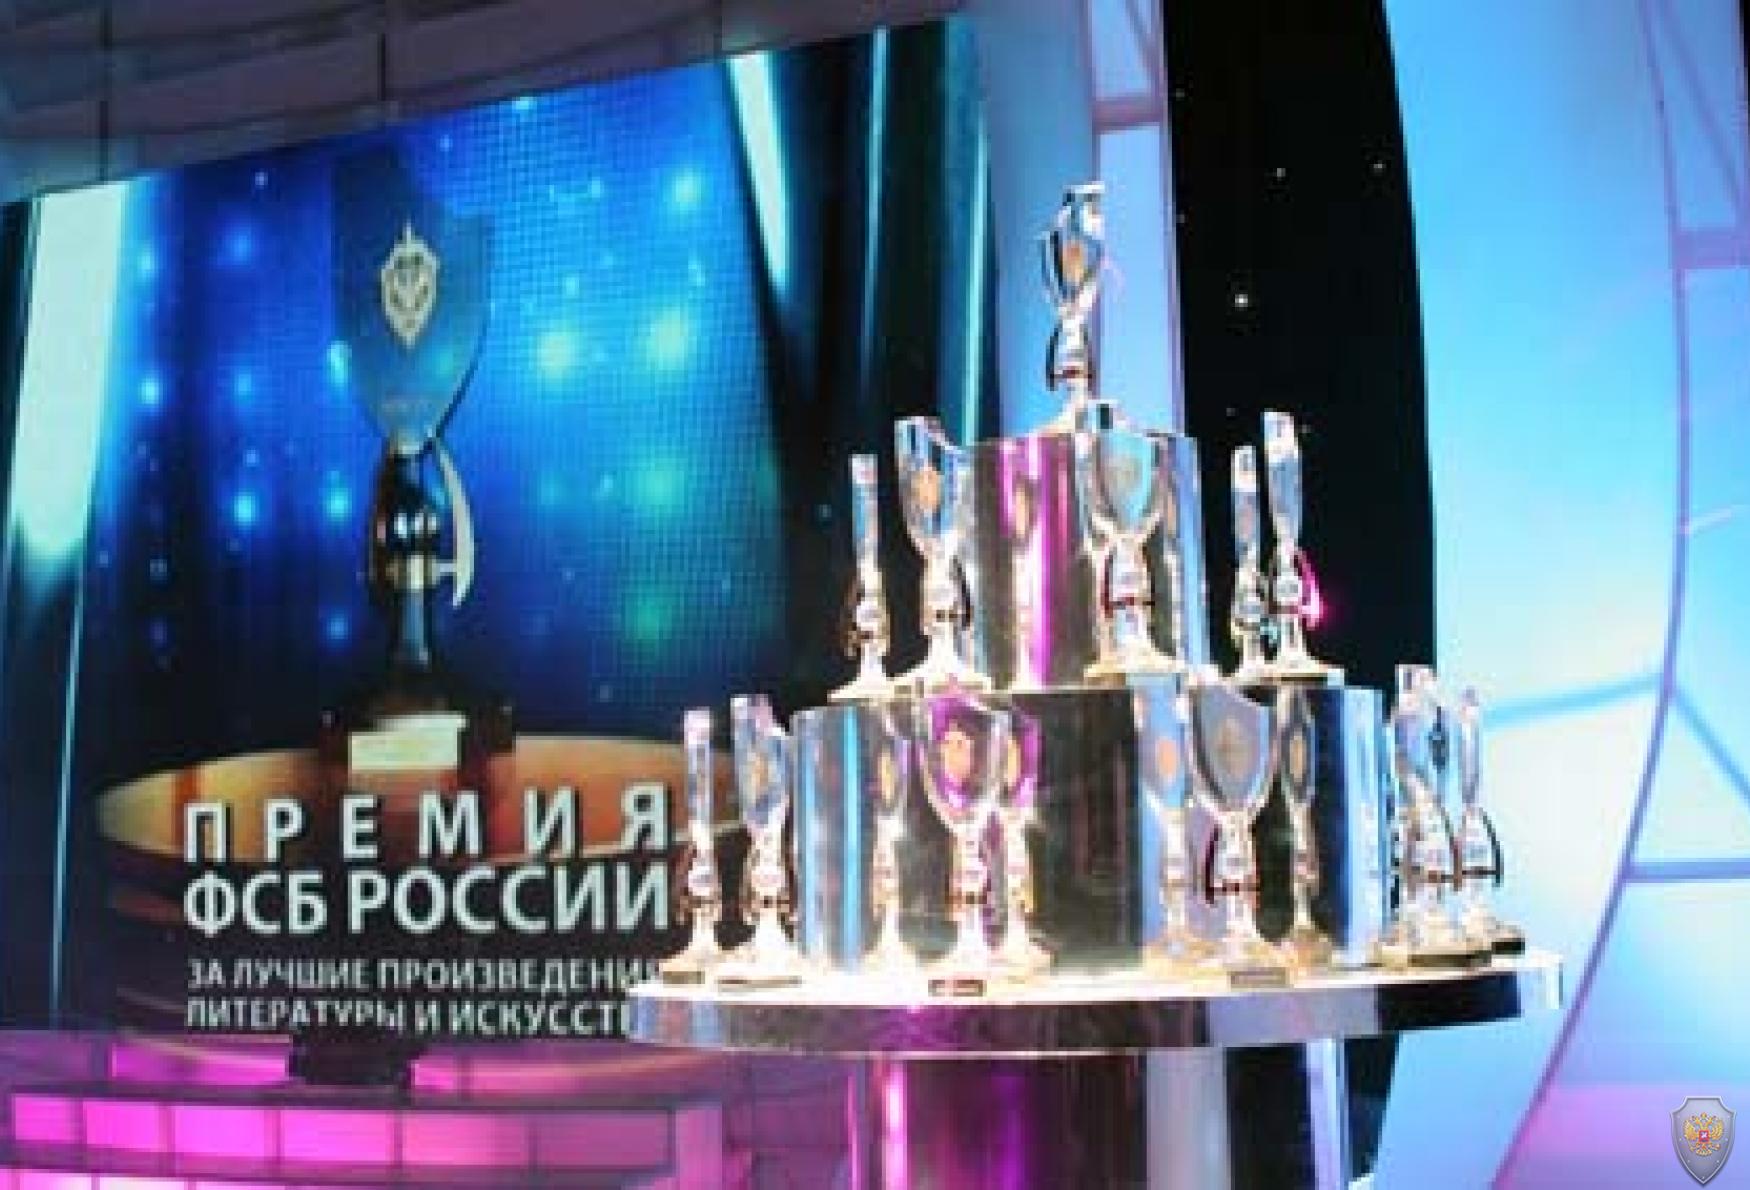 ФСБ России объявляет конкурс на лучшие произведения литературы и искусства о деятельности органов федеральной службы безопасности